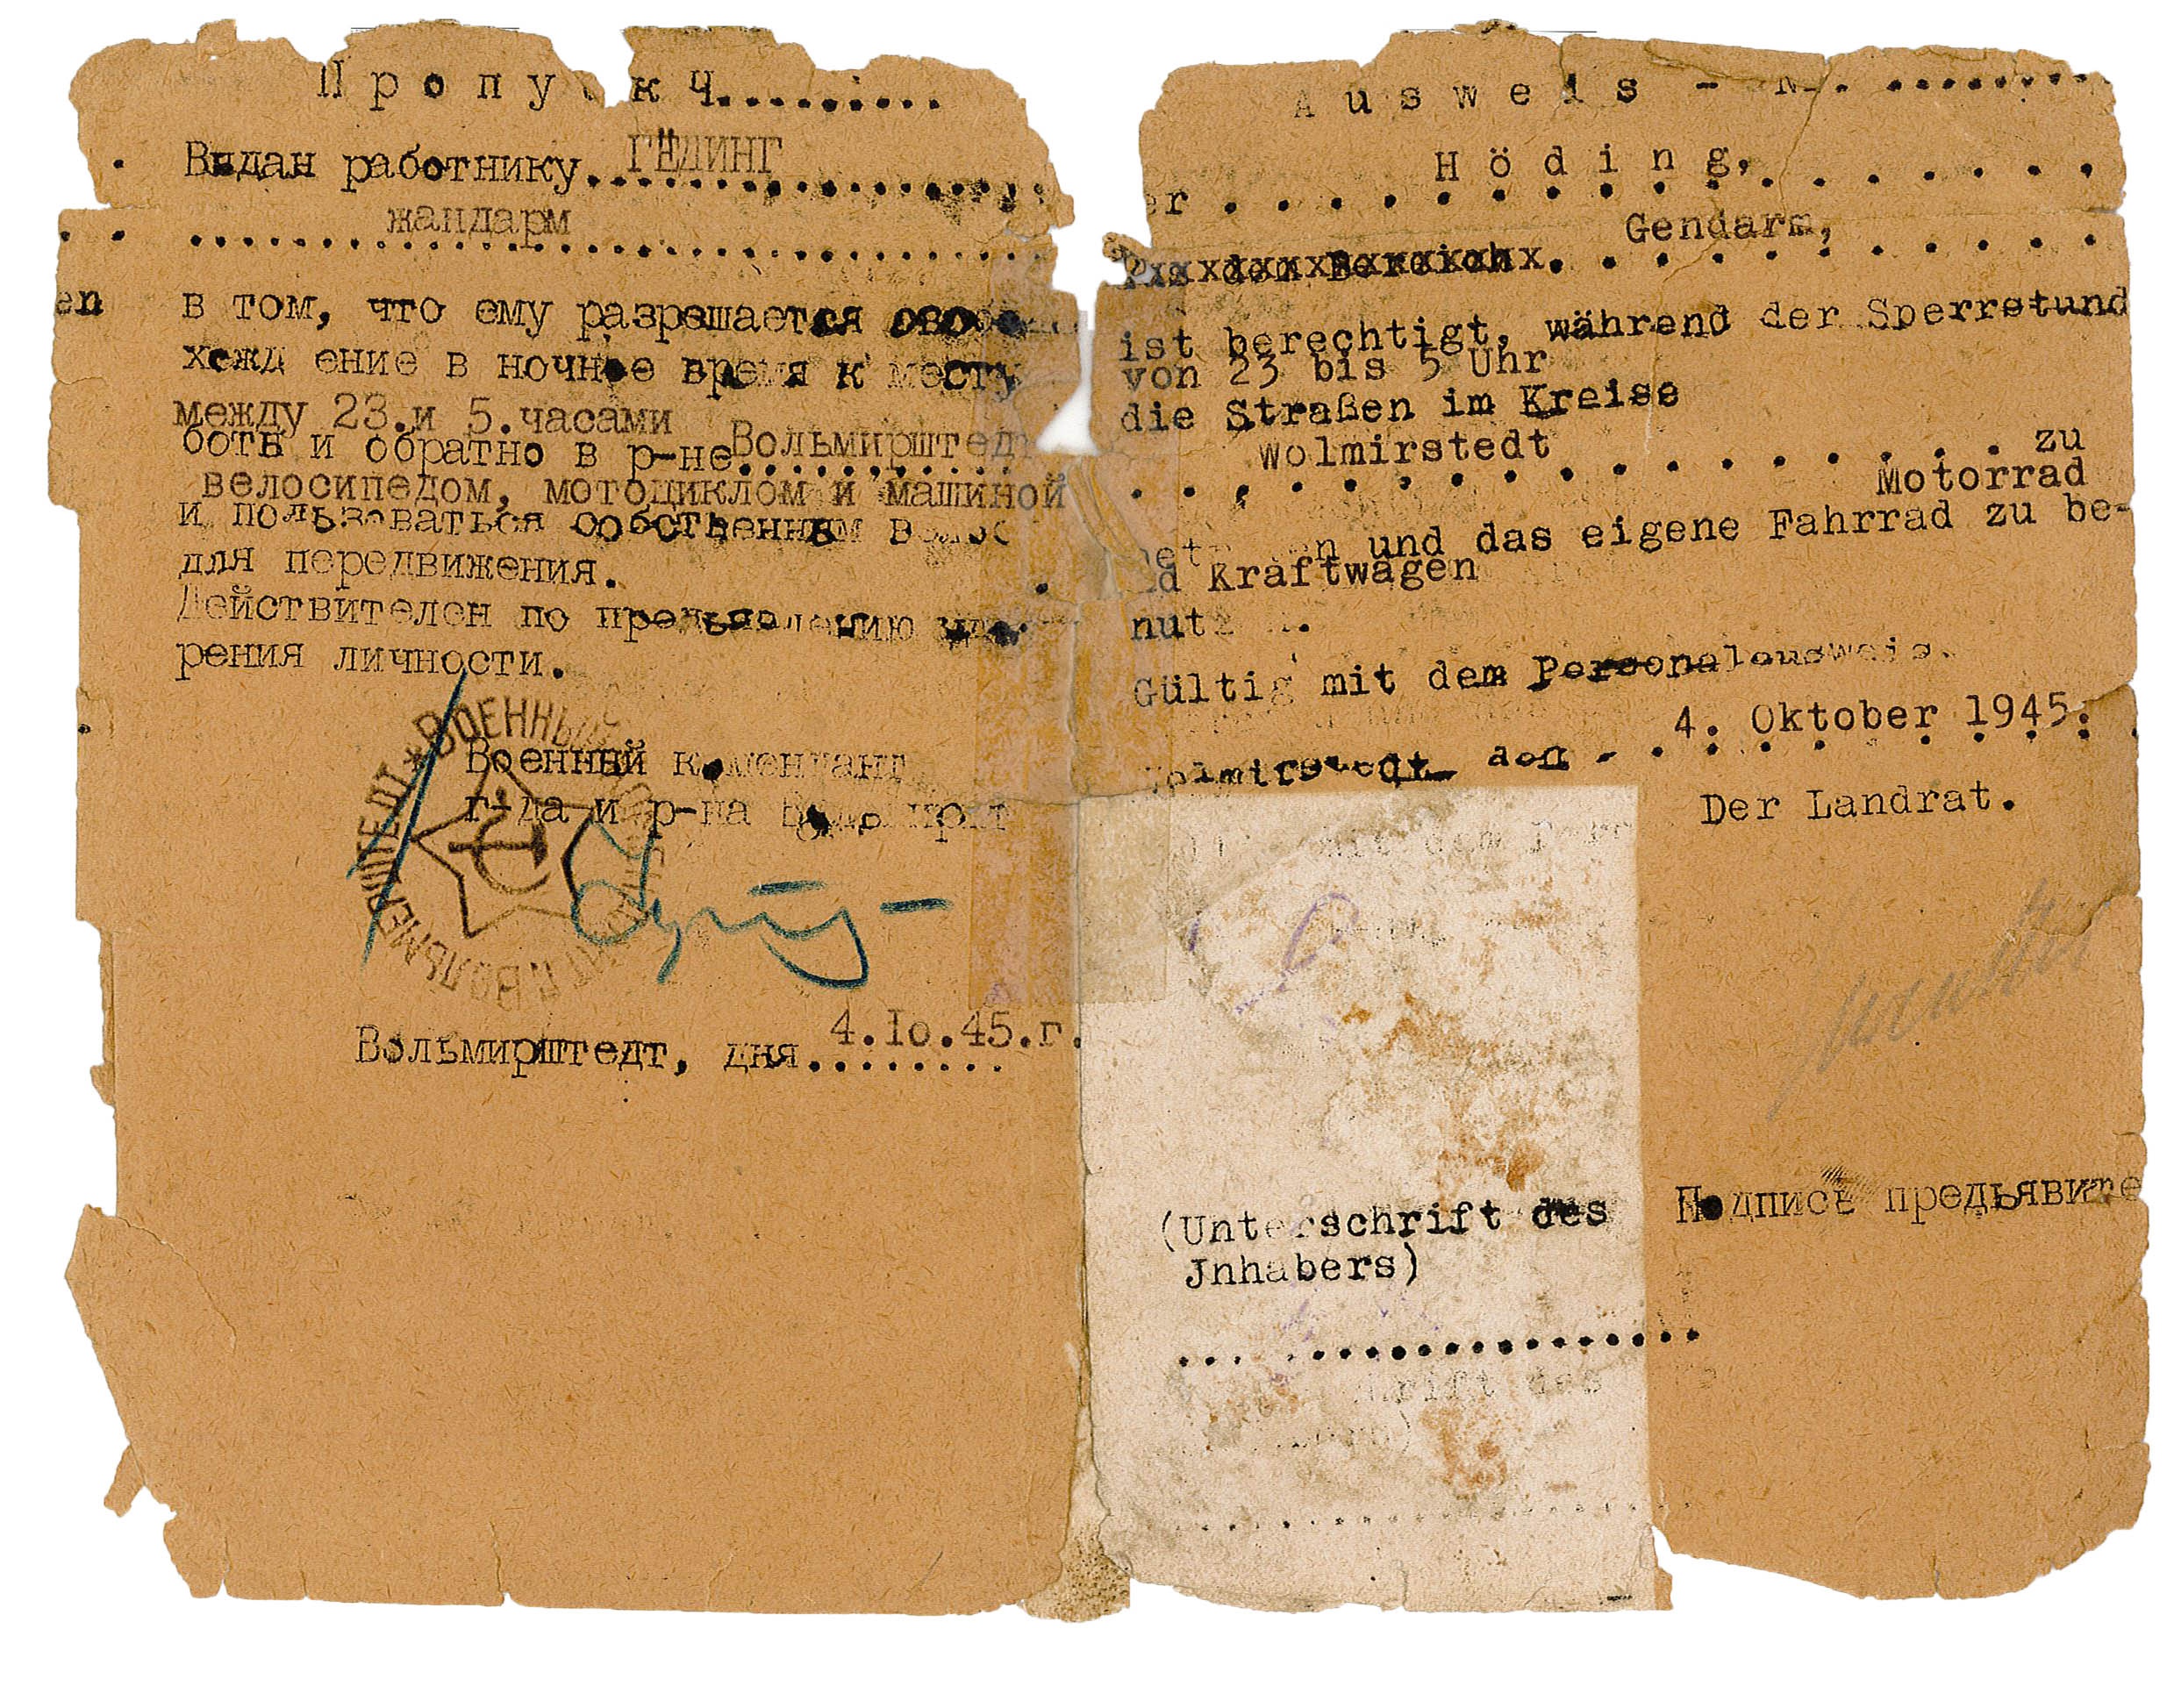 Ausweis/Berechtigungsschein für Höding, 1945 (Museum Wolmirstedt RR-F)